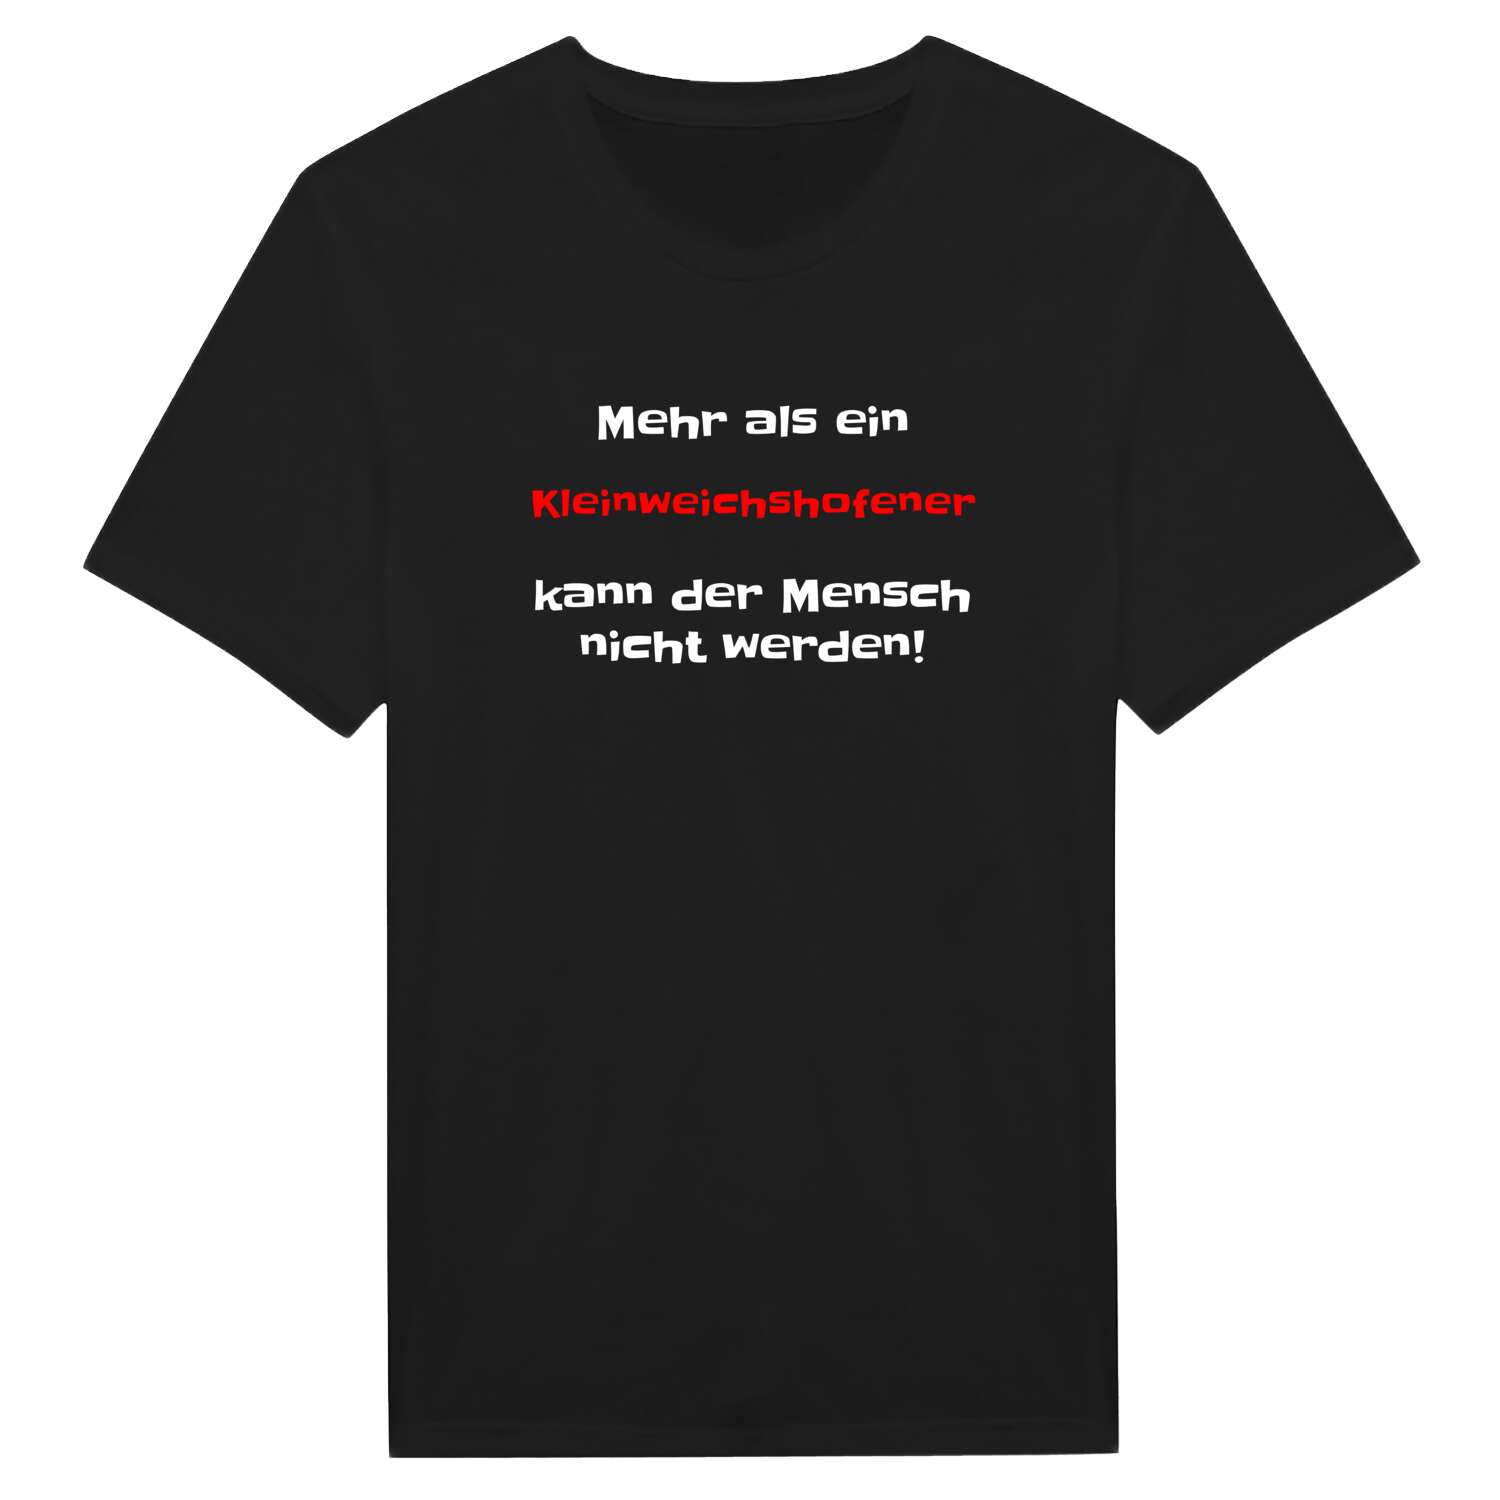 Kleinweichshofen T-Shirt »Mehr als ein«